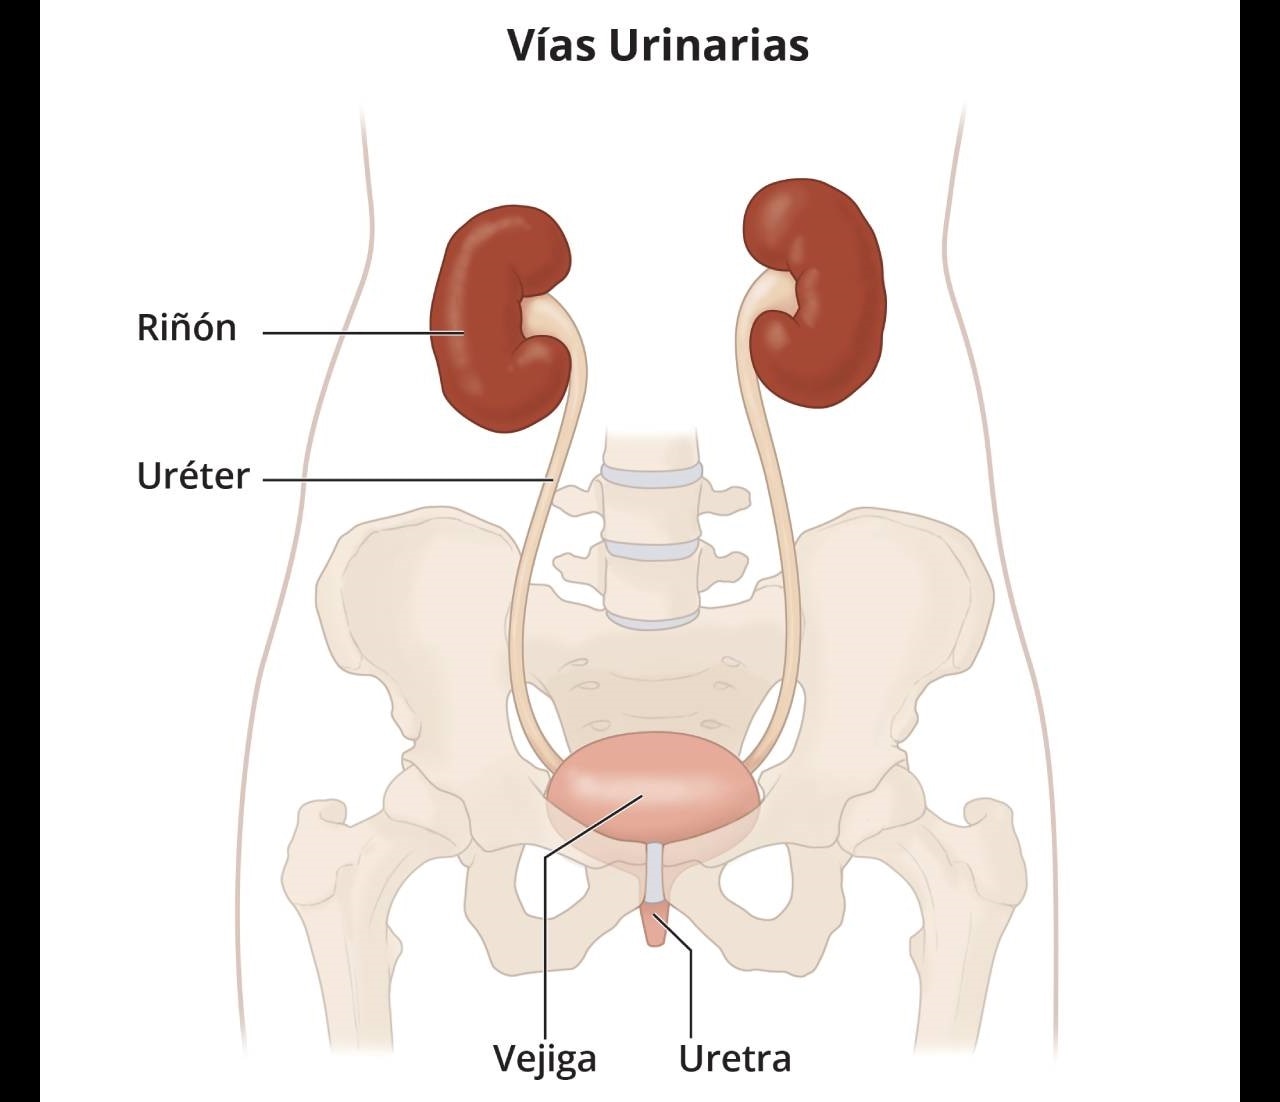 Vías urinarias, que incluyen los riñones, los uréteres, la vejiga y la uretra.